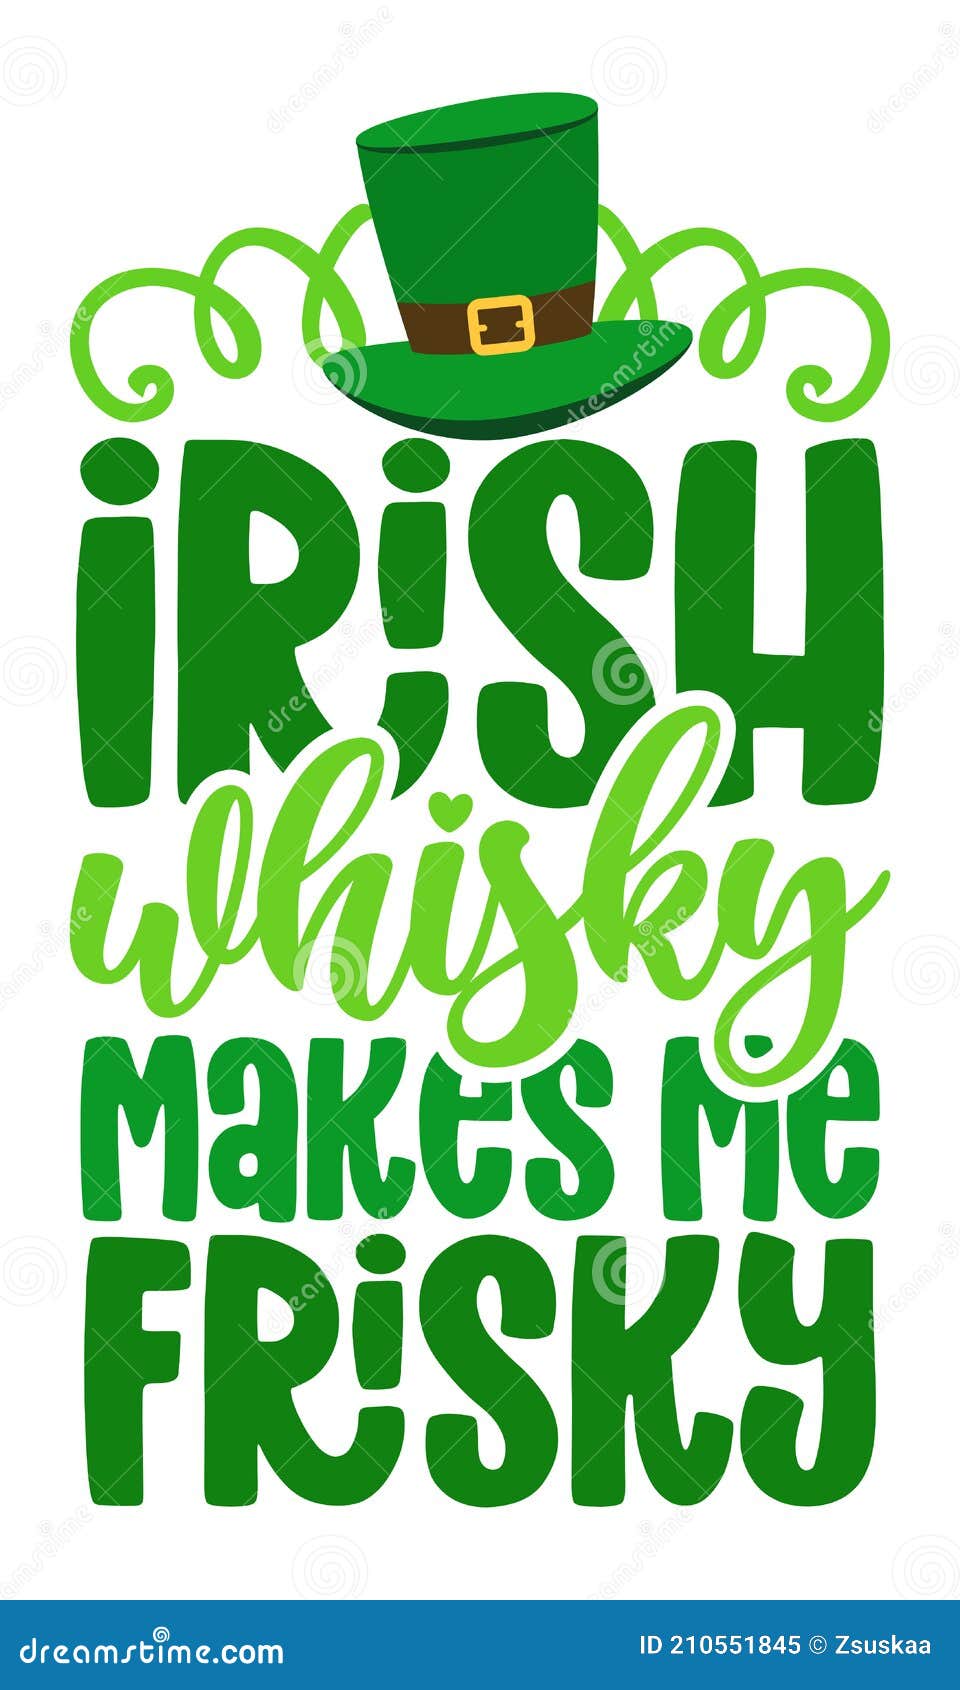 irish whiskey makes me frisky - funny st patrik`s day